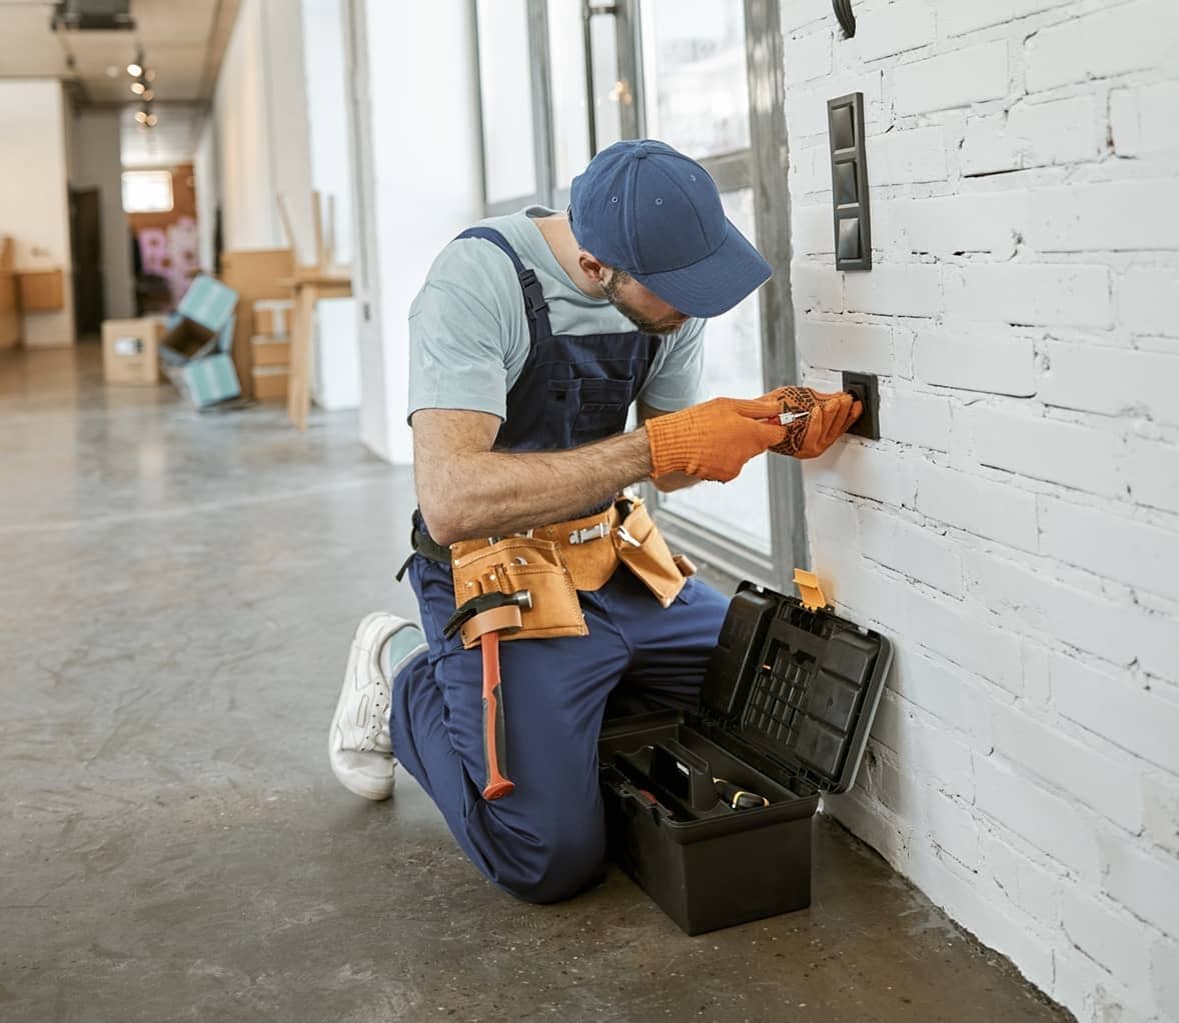 Hausmeister bei der Arbeit in München, der sich um die Instandhaltung eines Gebäudes kümmert, indem er elektrische Schalter prüft.